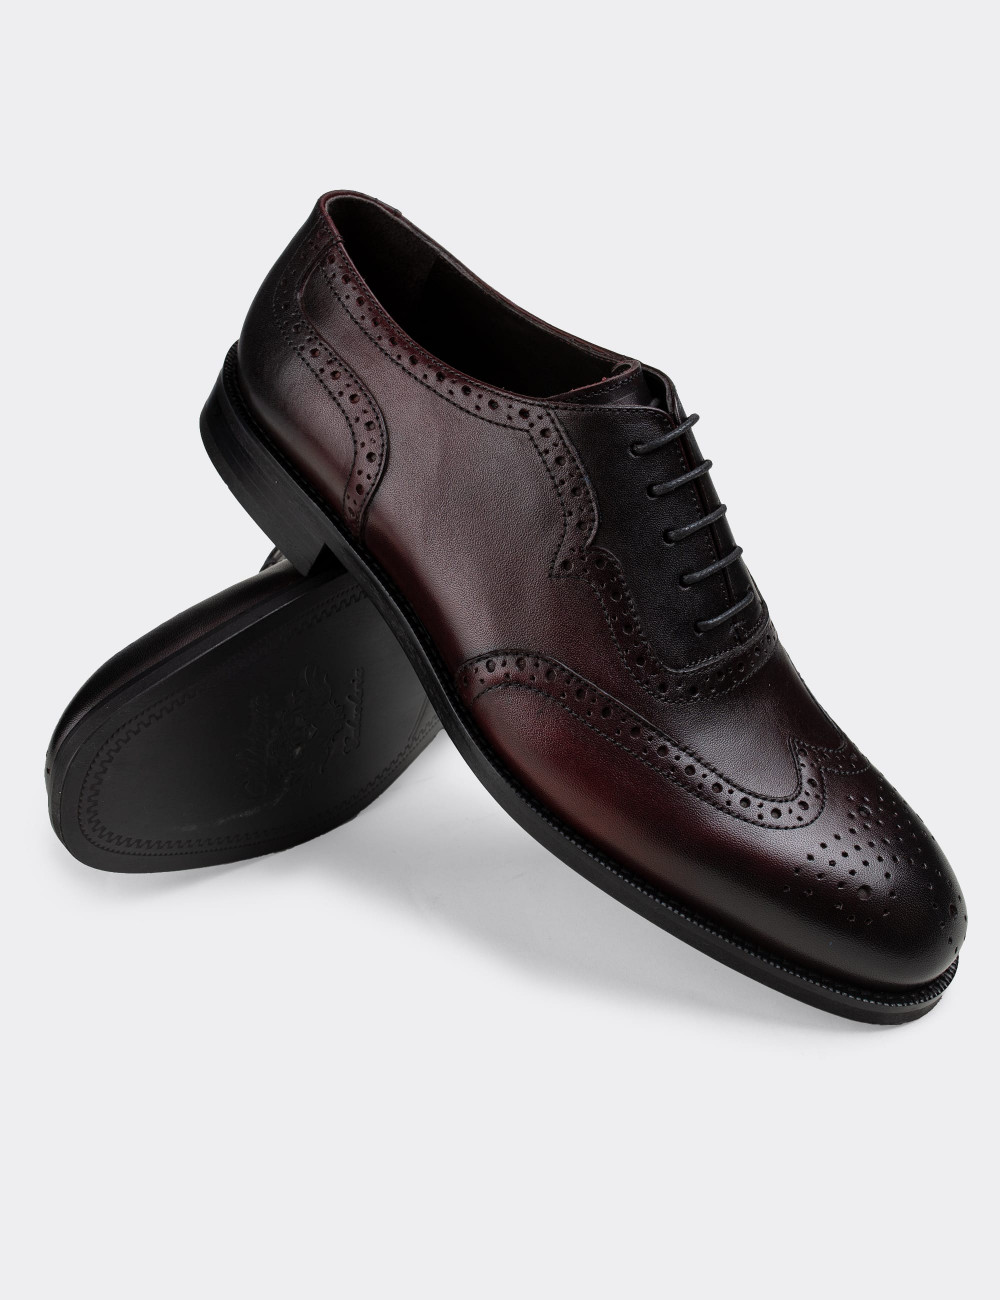 Hakiki Deri Bordo Klasik Erkek Ayakkabı - 01676MBRDM01